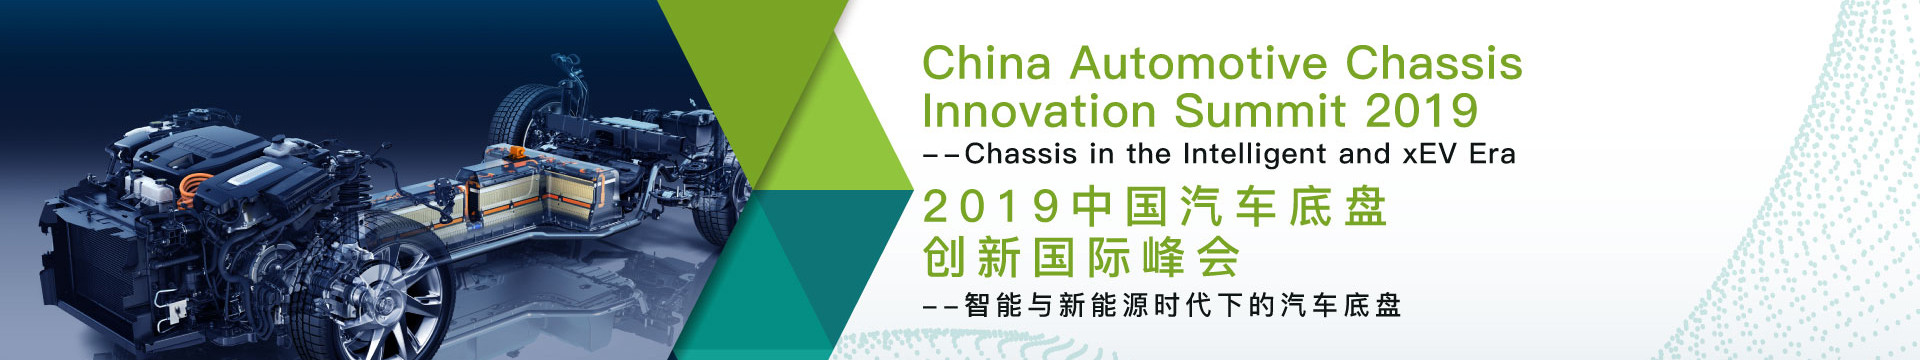 2019中国汽车底盘创新国际峰会——智能与新能源时代下的汽车底盘（上海）